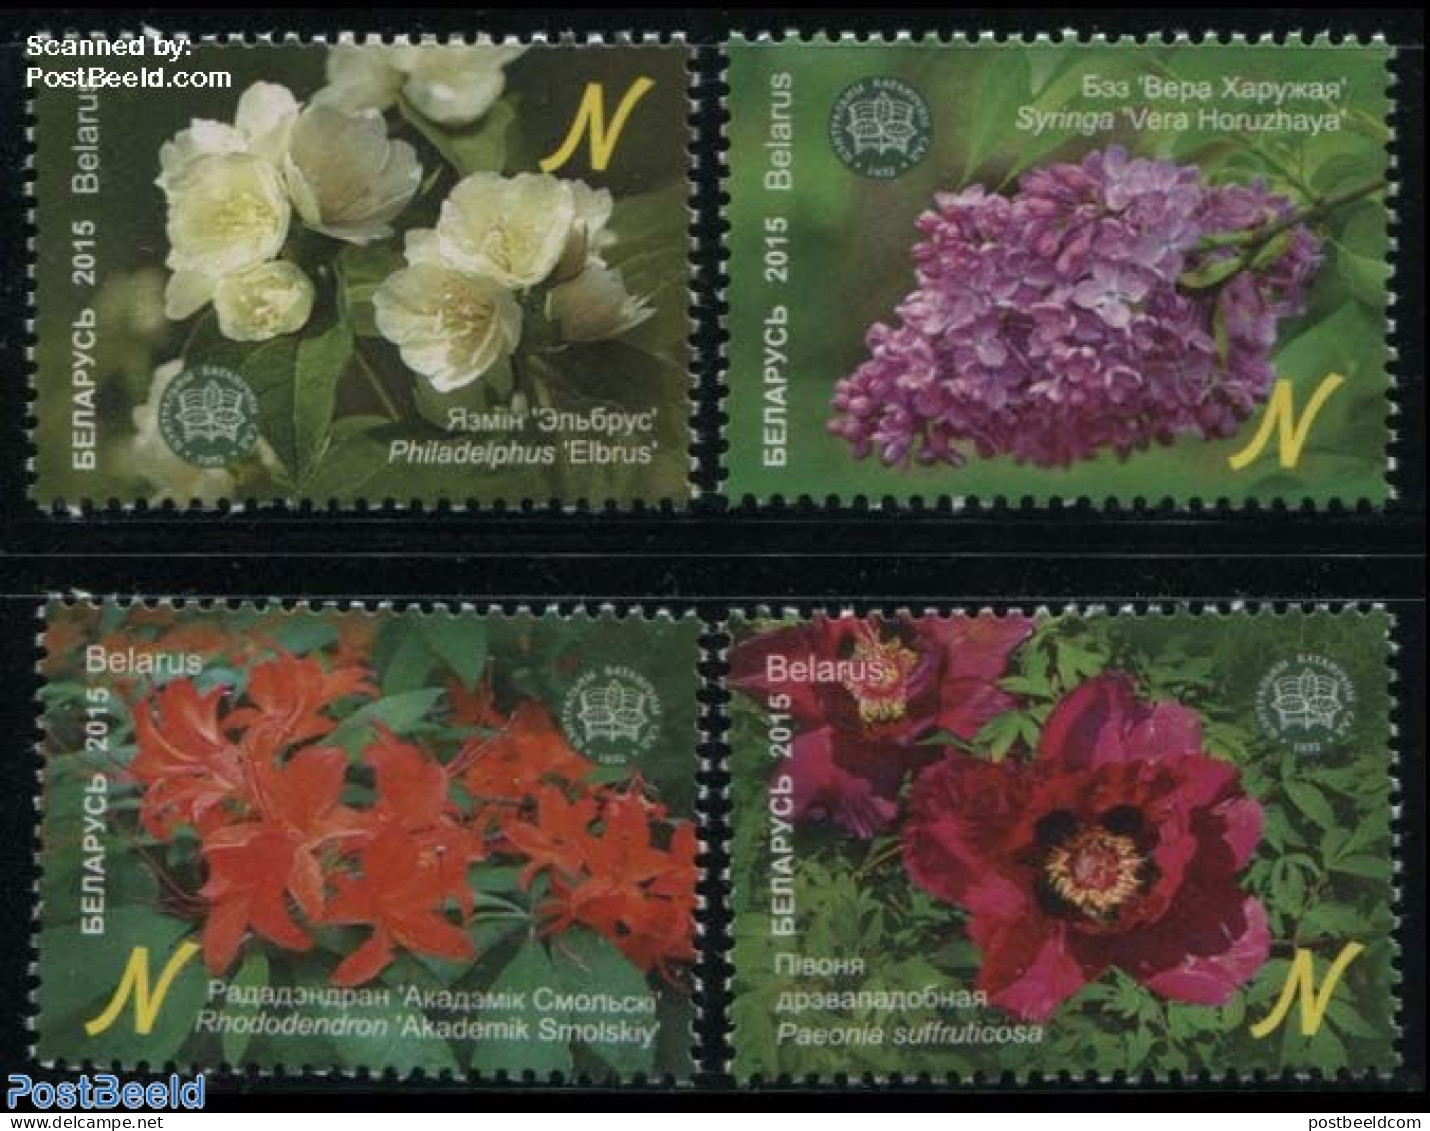 Belarus 2015 Botanical Garden 4v, Mint NH, Nature - Flowers & Plants - Belarus